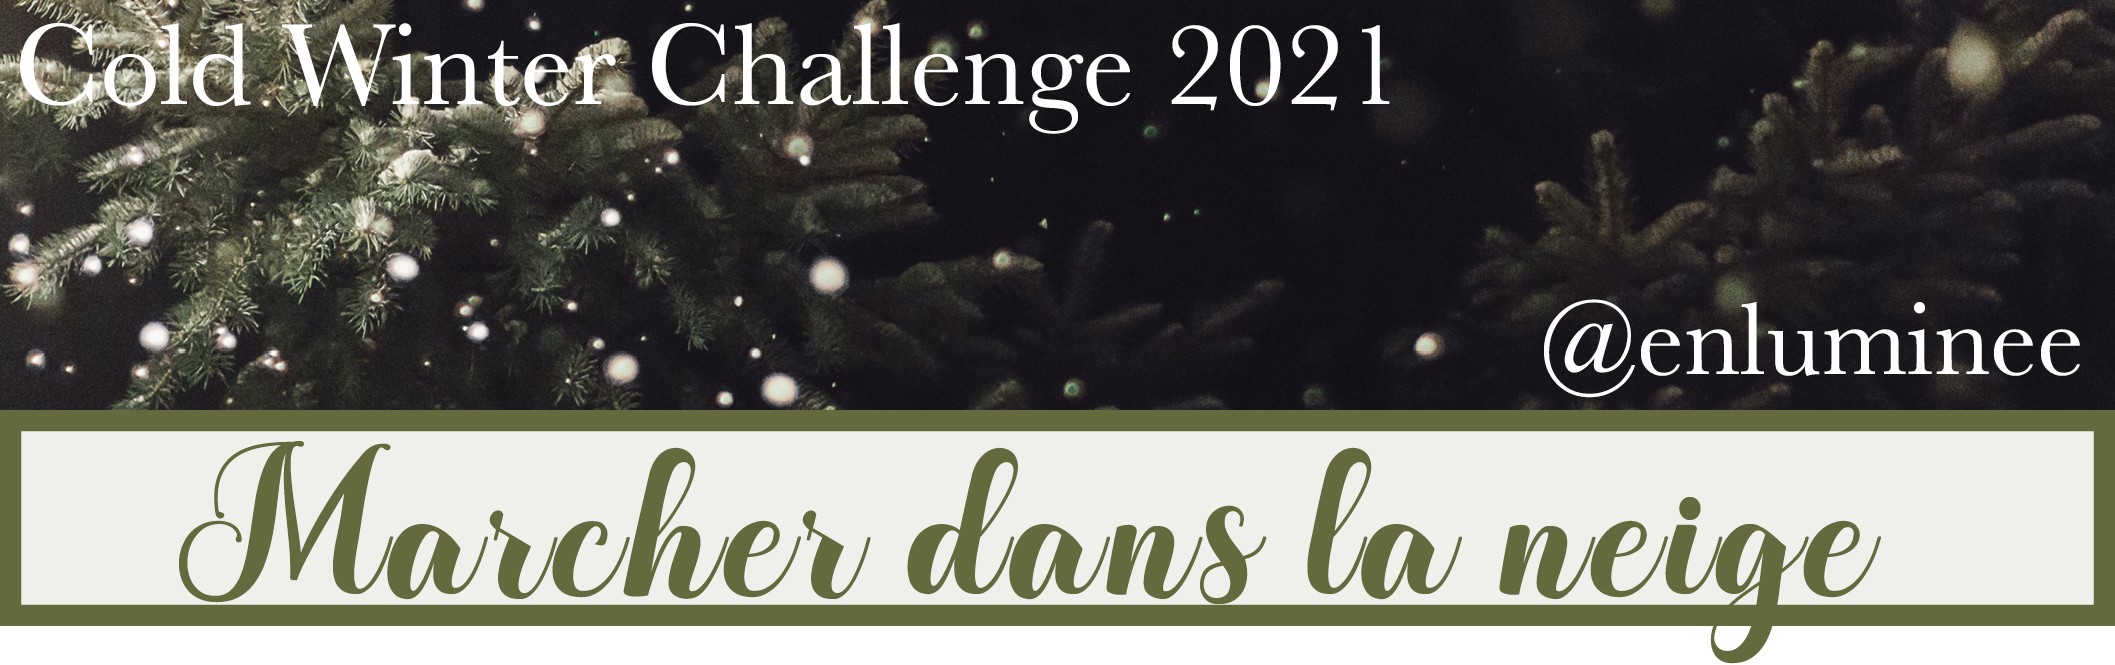 Cold Winter Challenge 2021 - Marcher dans la neige